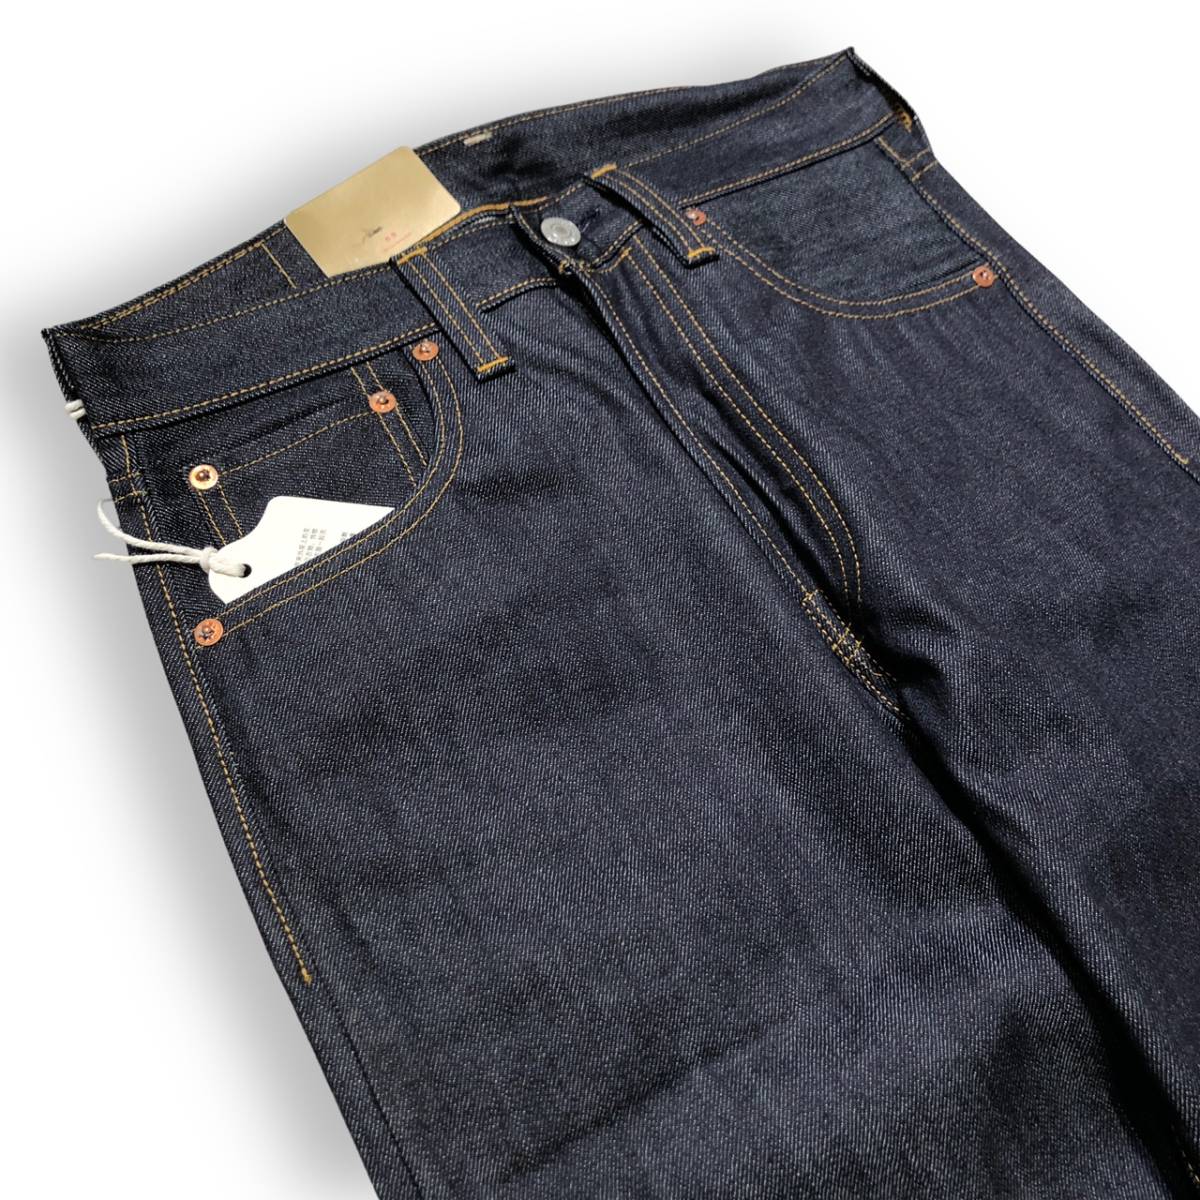 LEVI’S VINTAGE CLOTHING 501XX denim jeans 1947年モデル 47501-0224 デニム ジーンズ W30 リーバイス ビンテージクロージング_画像3